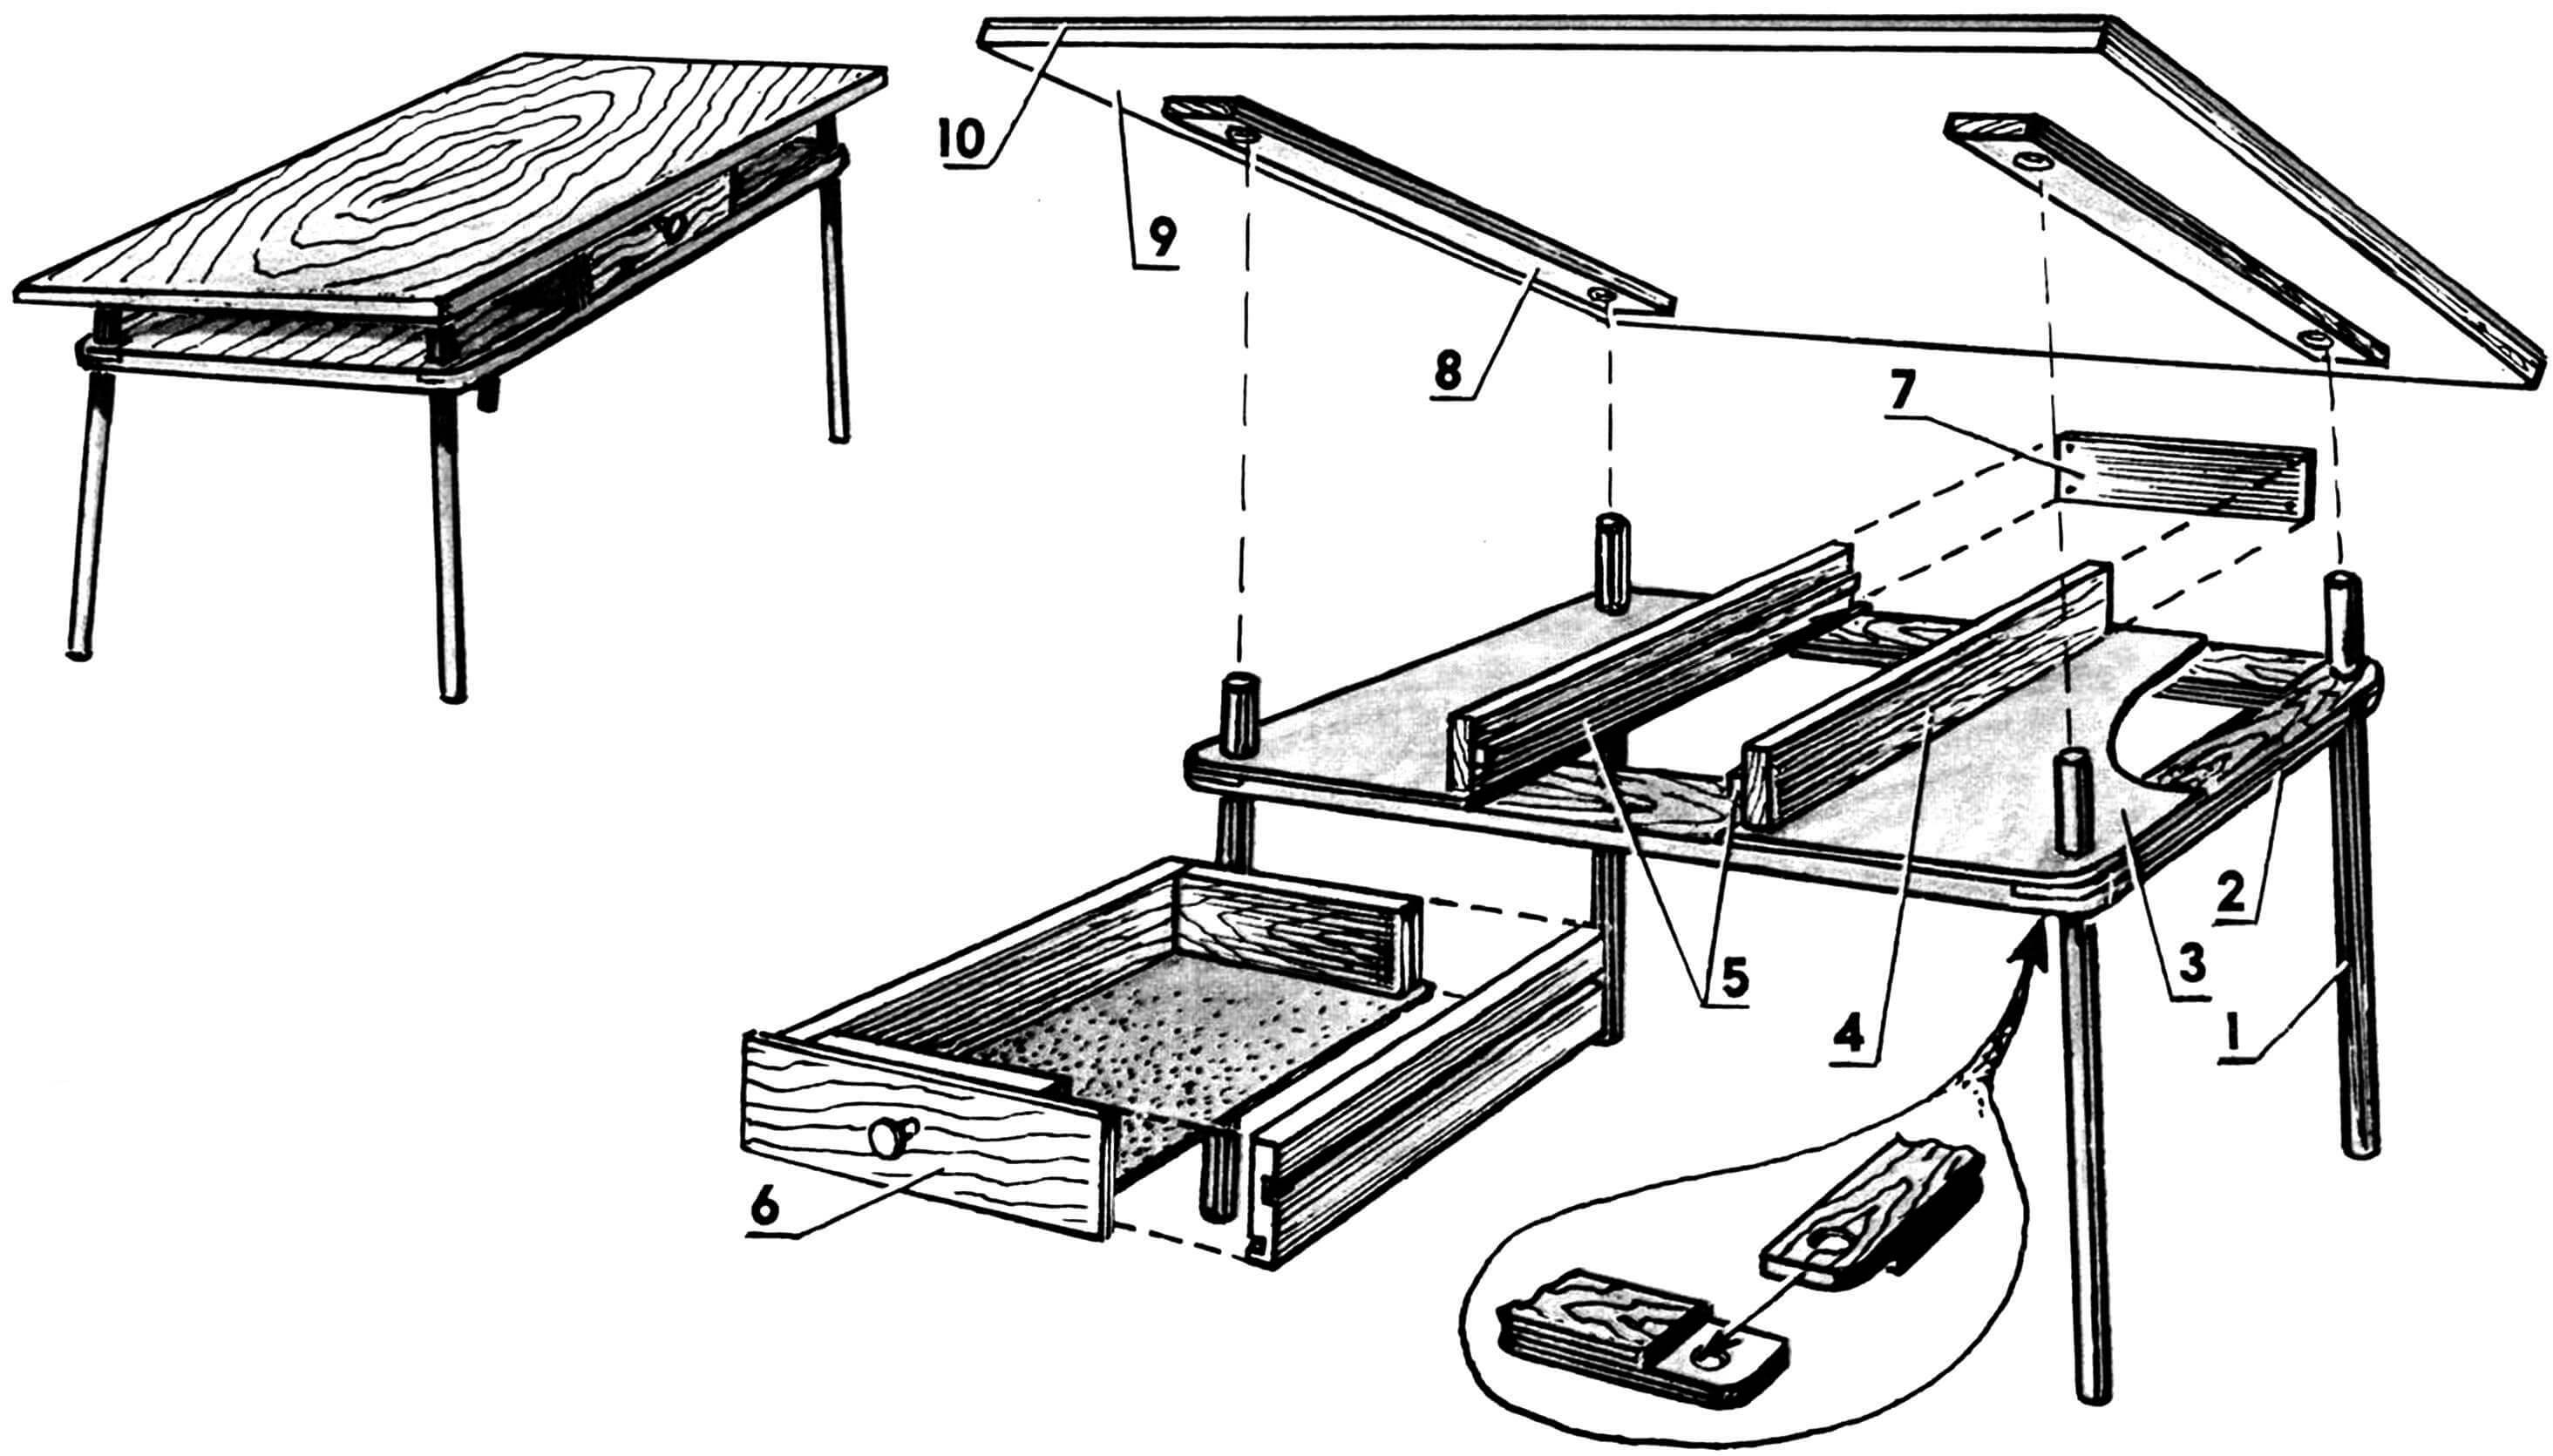 Стол: 1 — ножка; 2 — рамка; 3 — подстолье; 4 — опора; 5 — направляющие; 6 — ящик; 7 — стенка тыльная; 8 — фиксаторы ножек; 9 — столешница; 10 — пластик.